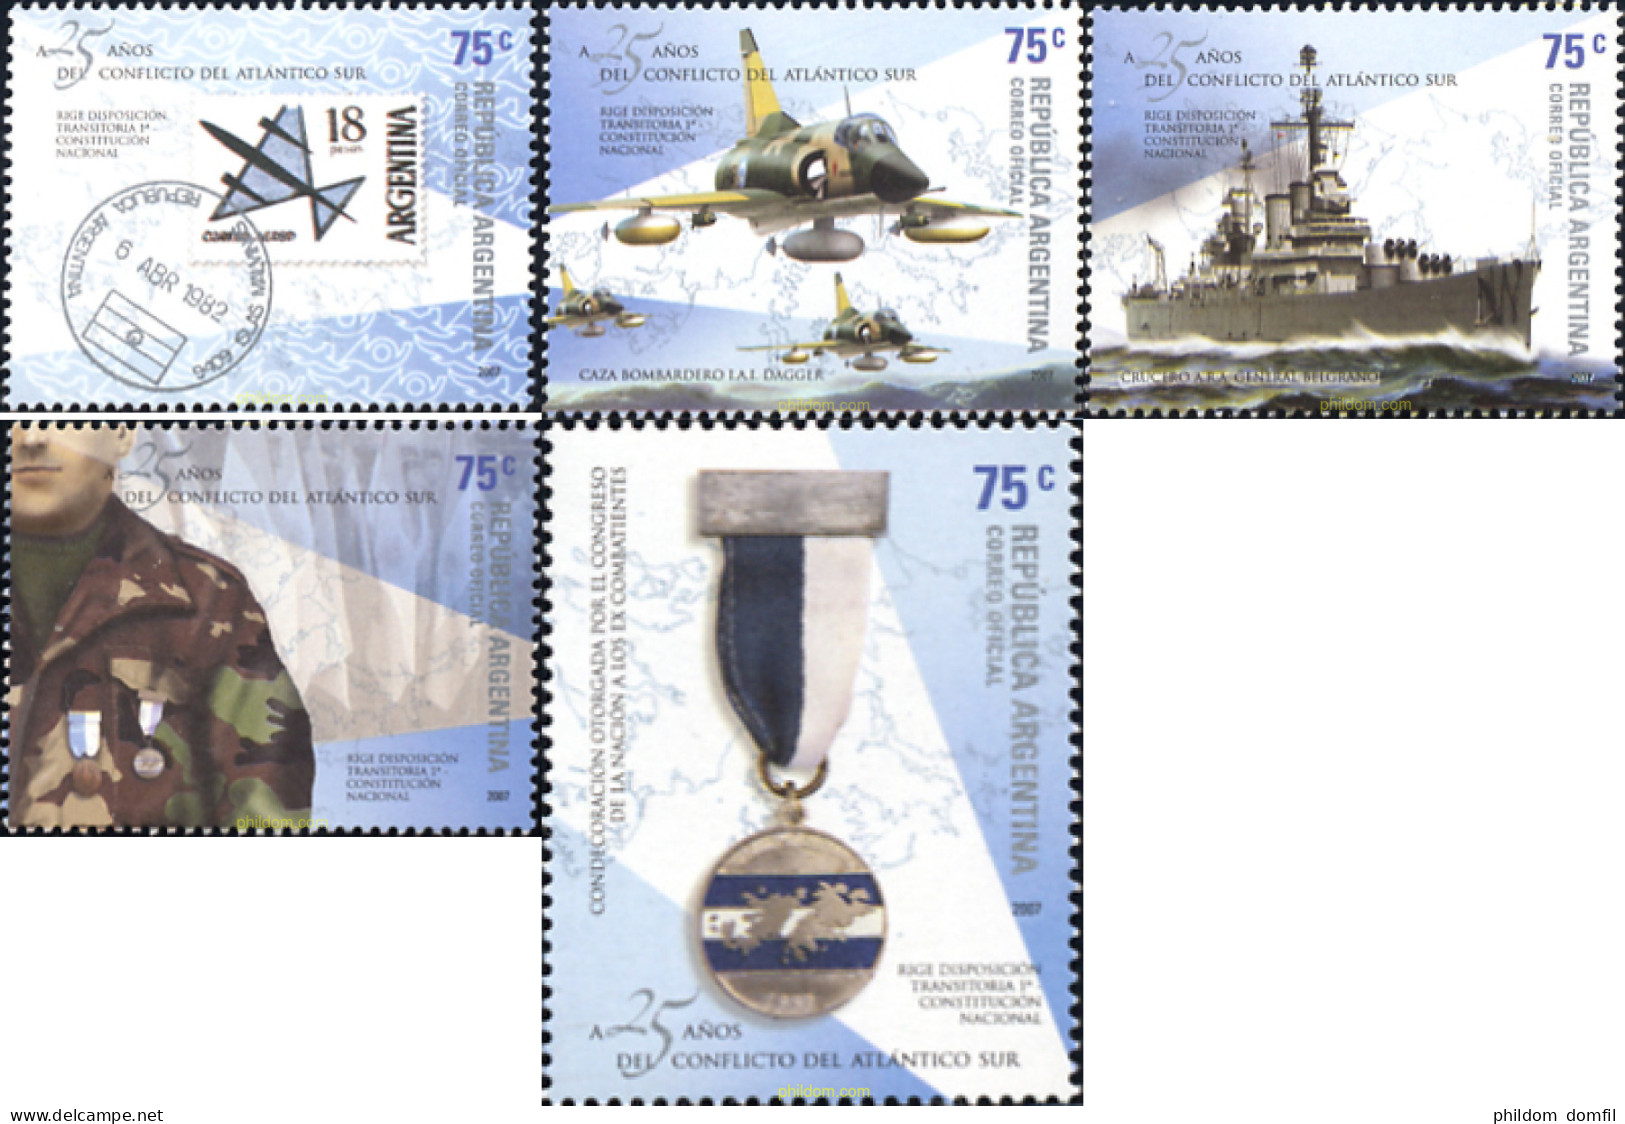 228654 MNH ARGENTINA 2007 25 AÑOS DE LA GUERRA DEL ATLANTICO DEL SUR - Unused Stamps